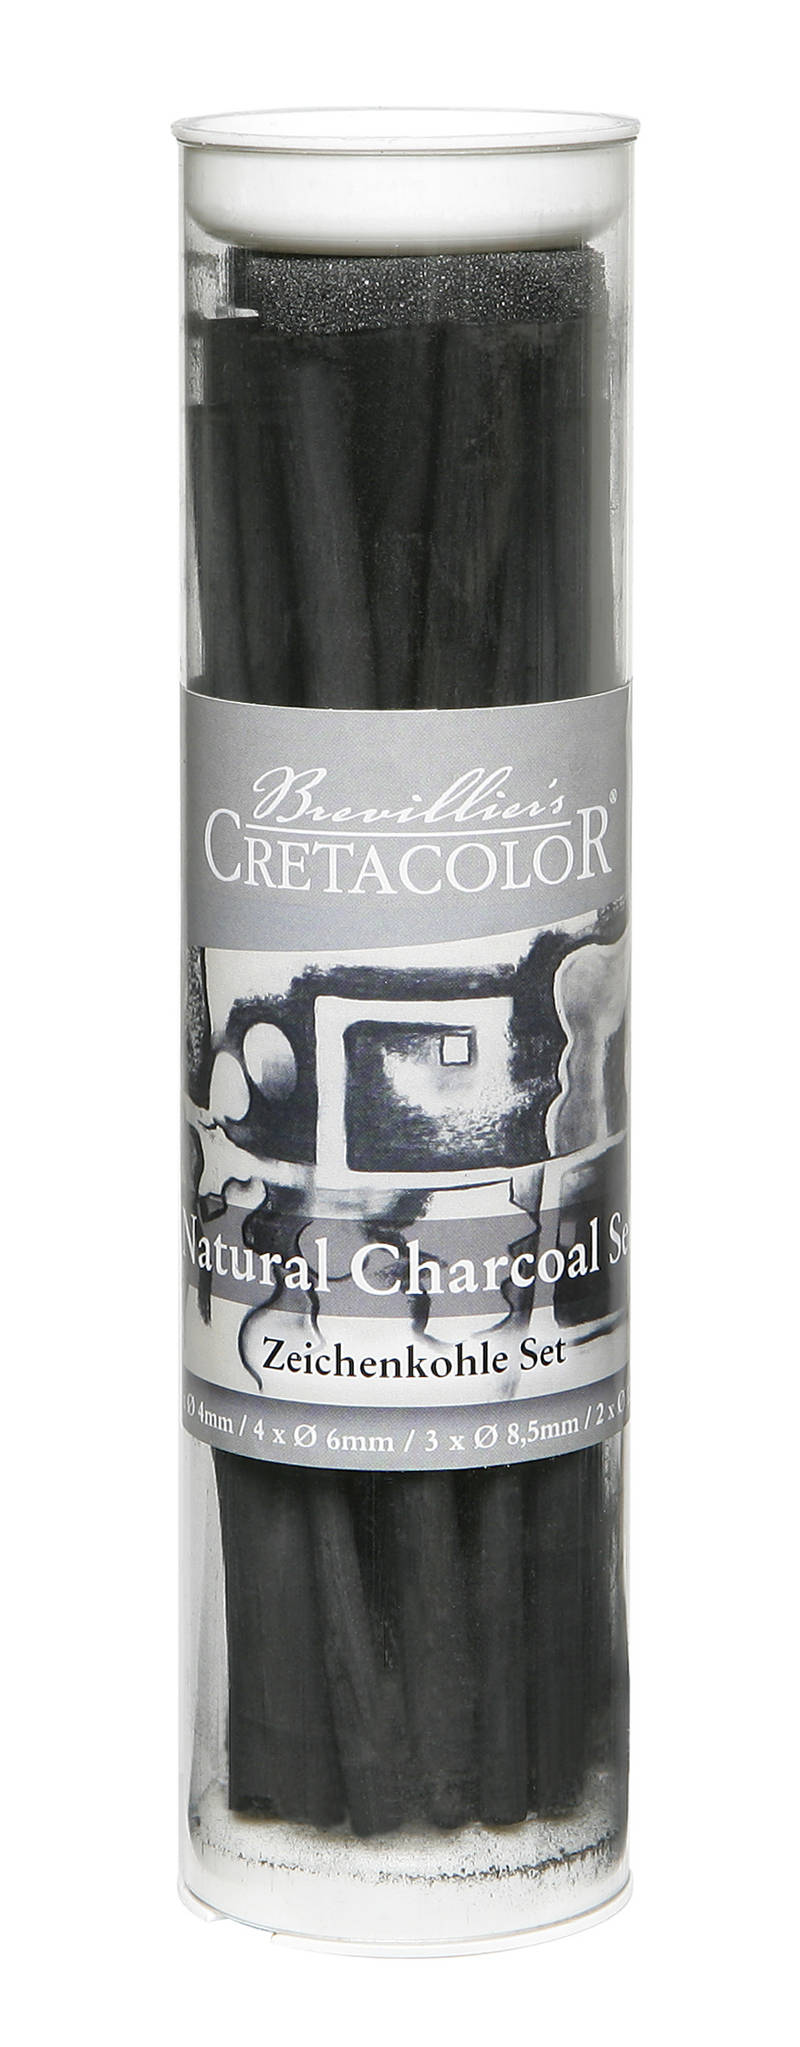 Cretacolor Natural Charcoal Sæt